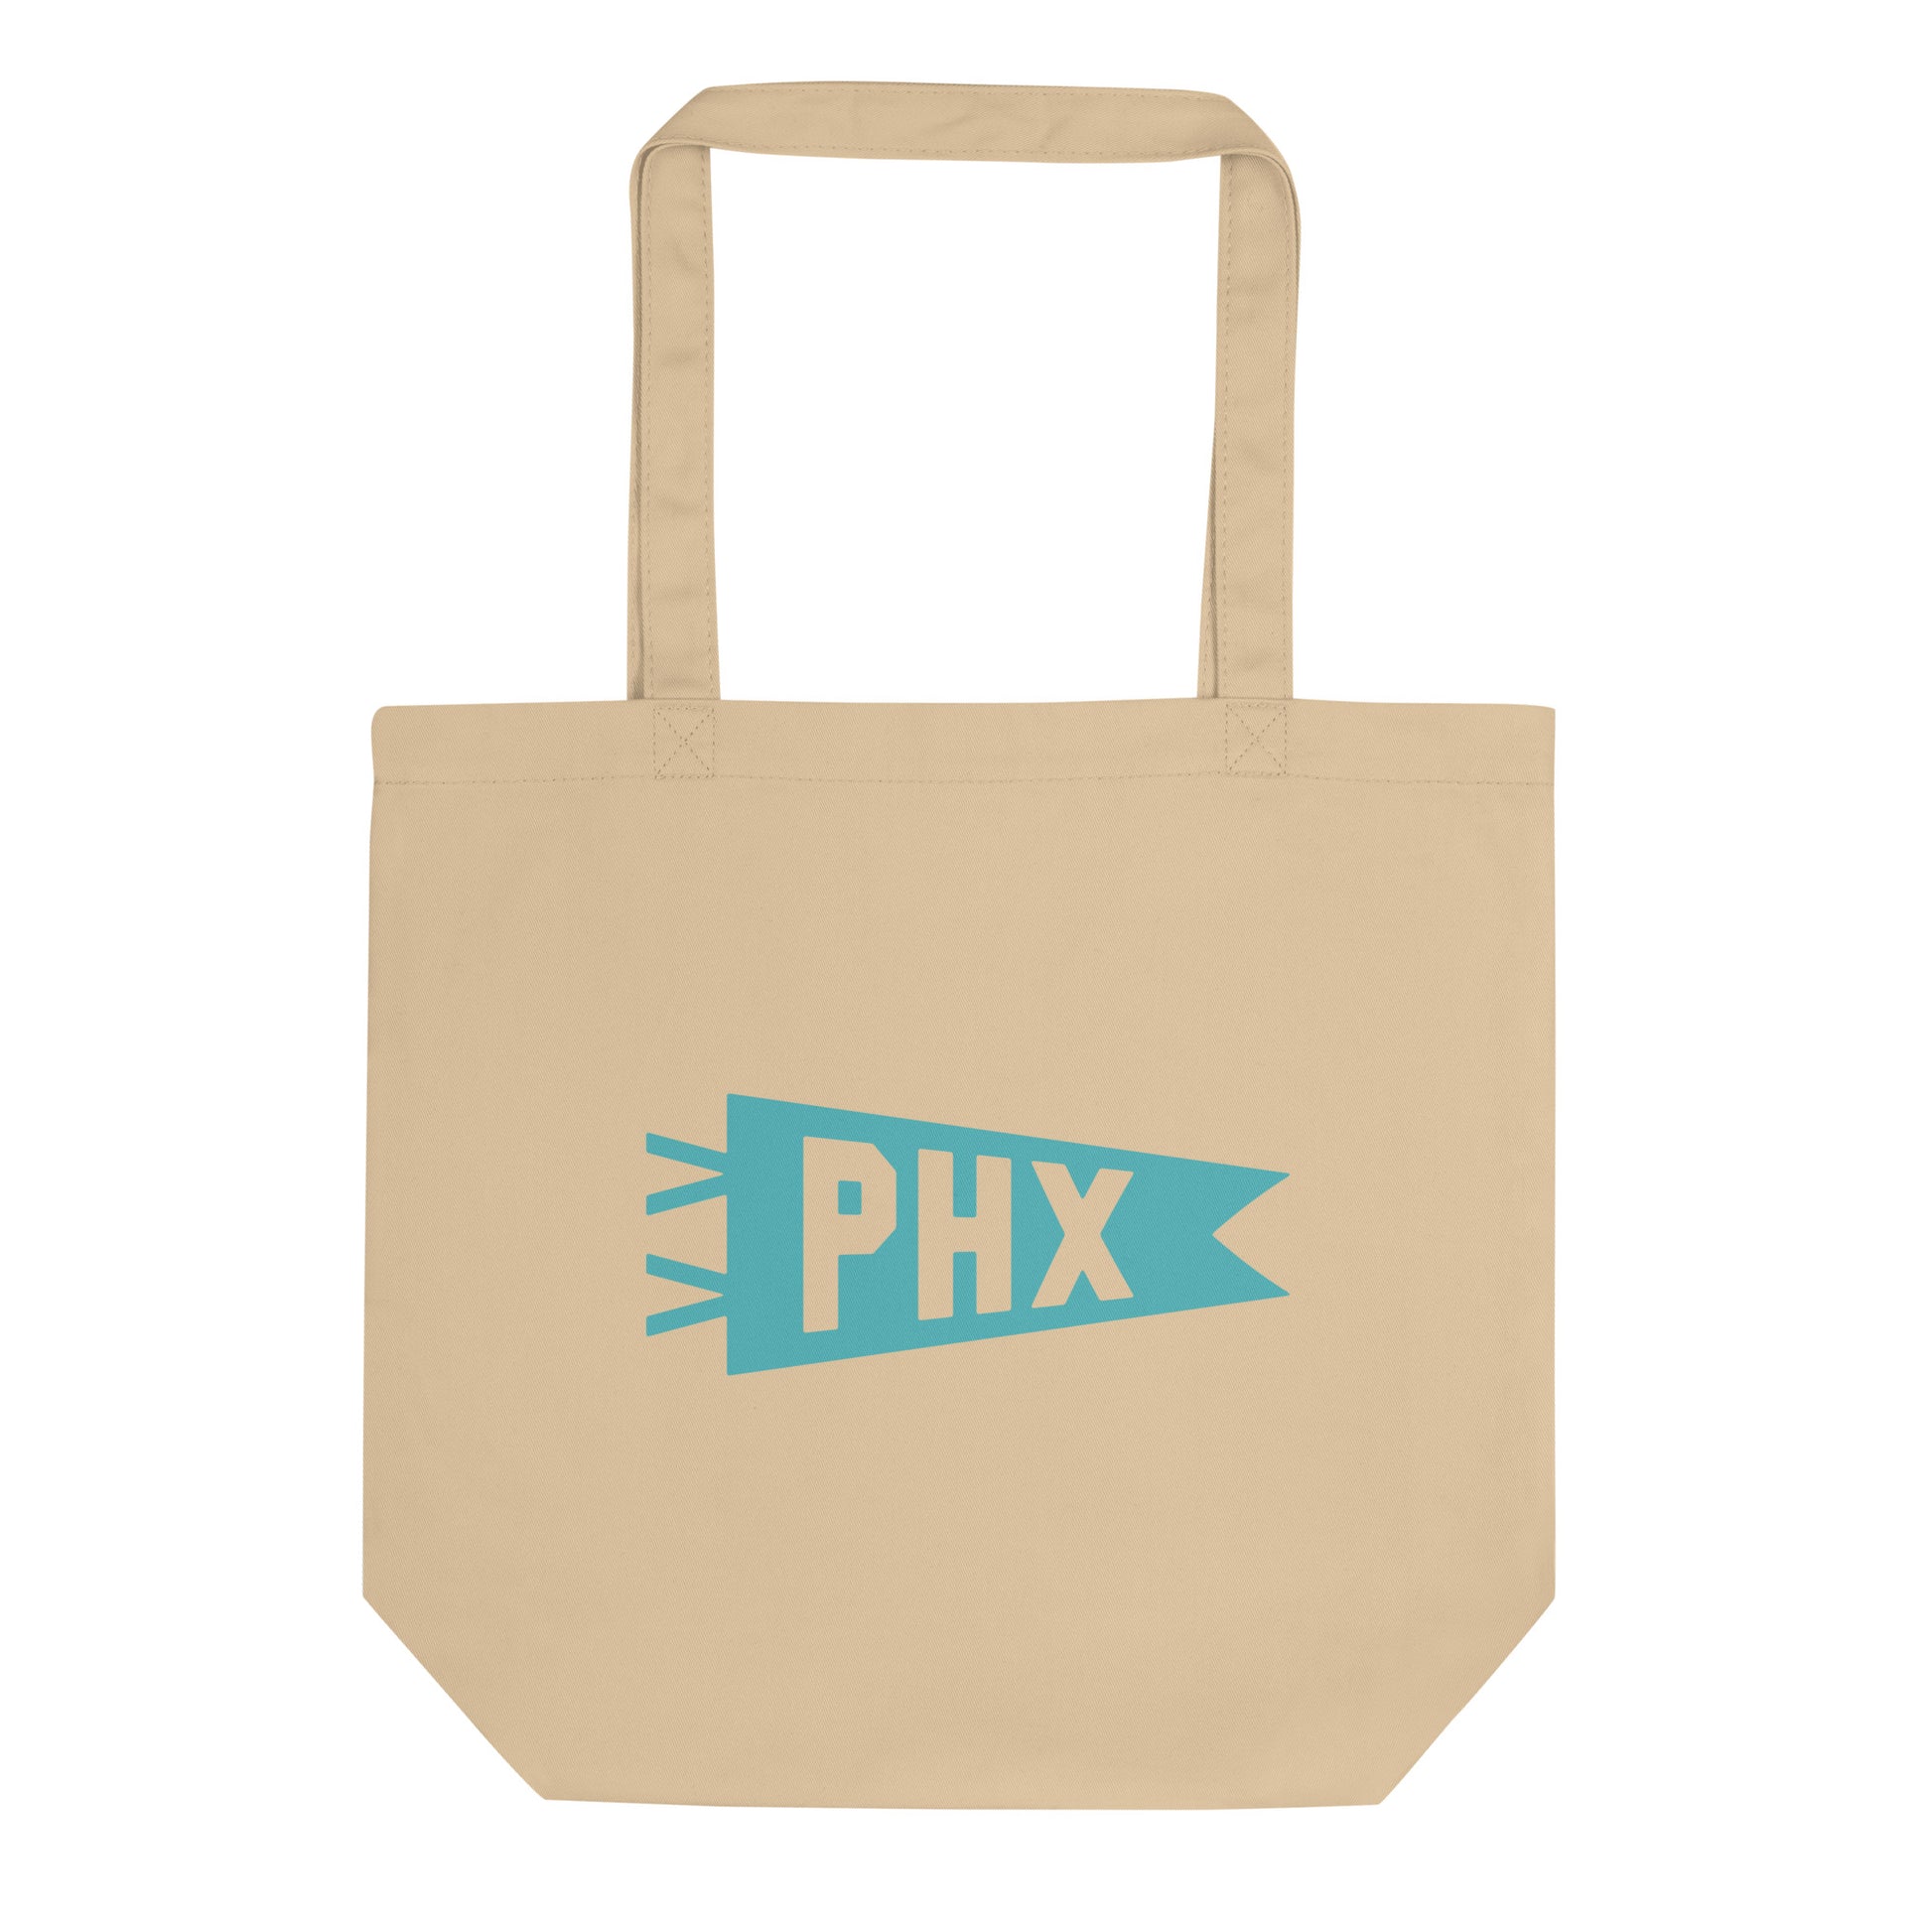 Cool Travel Gift Organic Tote Bag - Viking Blue • PHX Phoenix • YHM Designs - Image 01